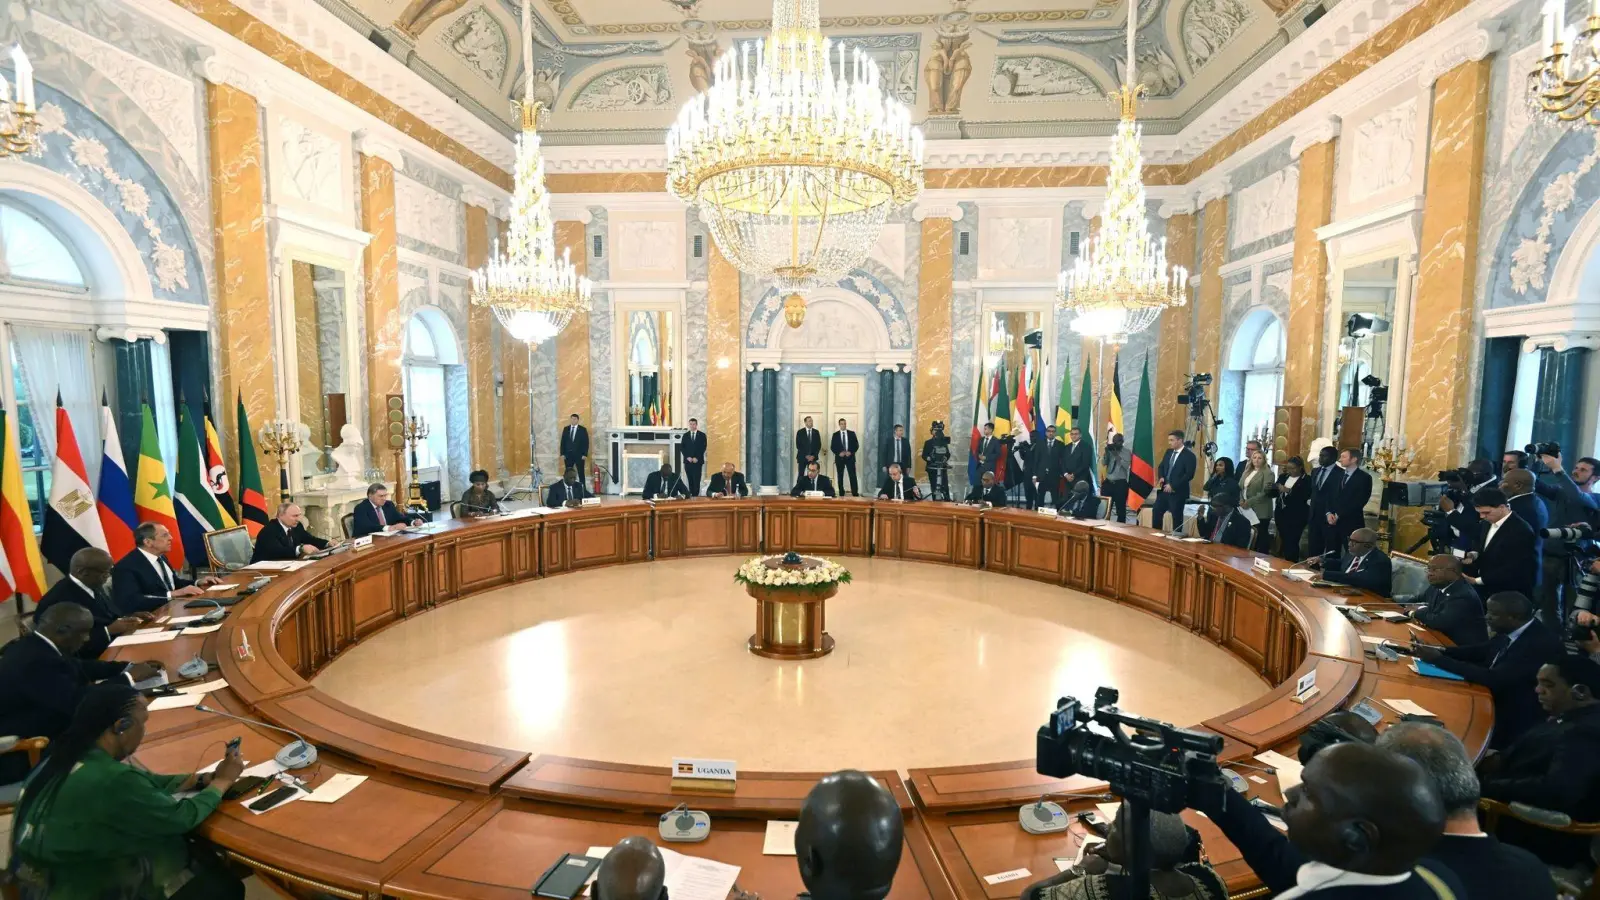 Präsident Putin (l) konferiert mit den Vertretern mehrerer afrikanischer Staaten in St. Petersburg. (Foto: Pavel Bednyakov/RIA Novosti/AP/dpa)